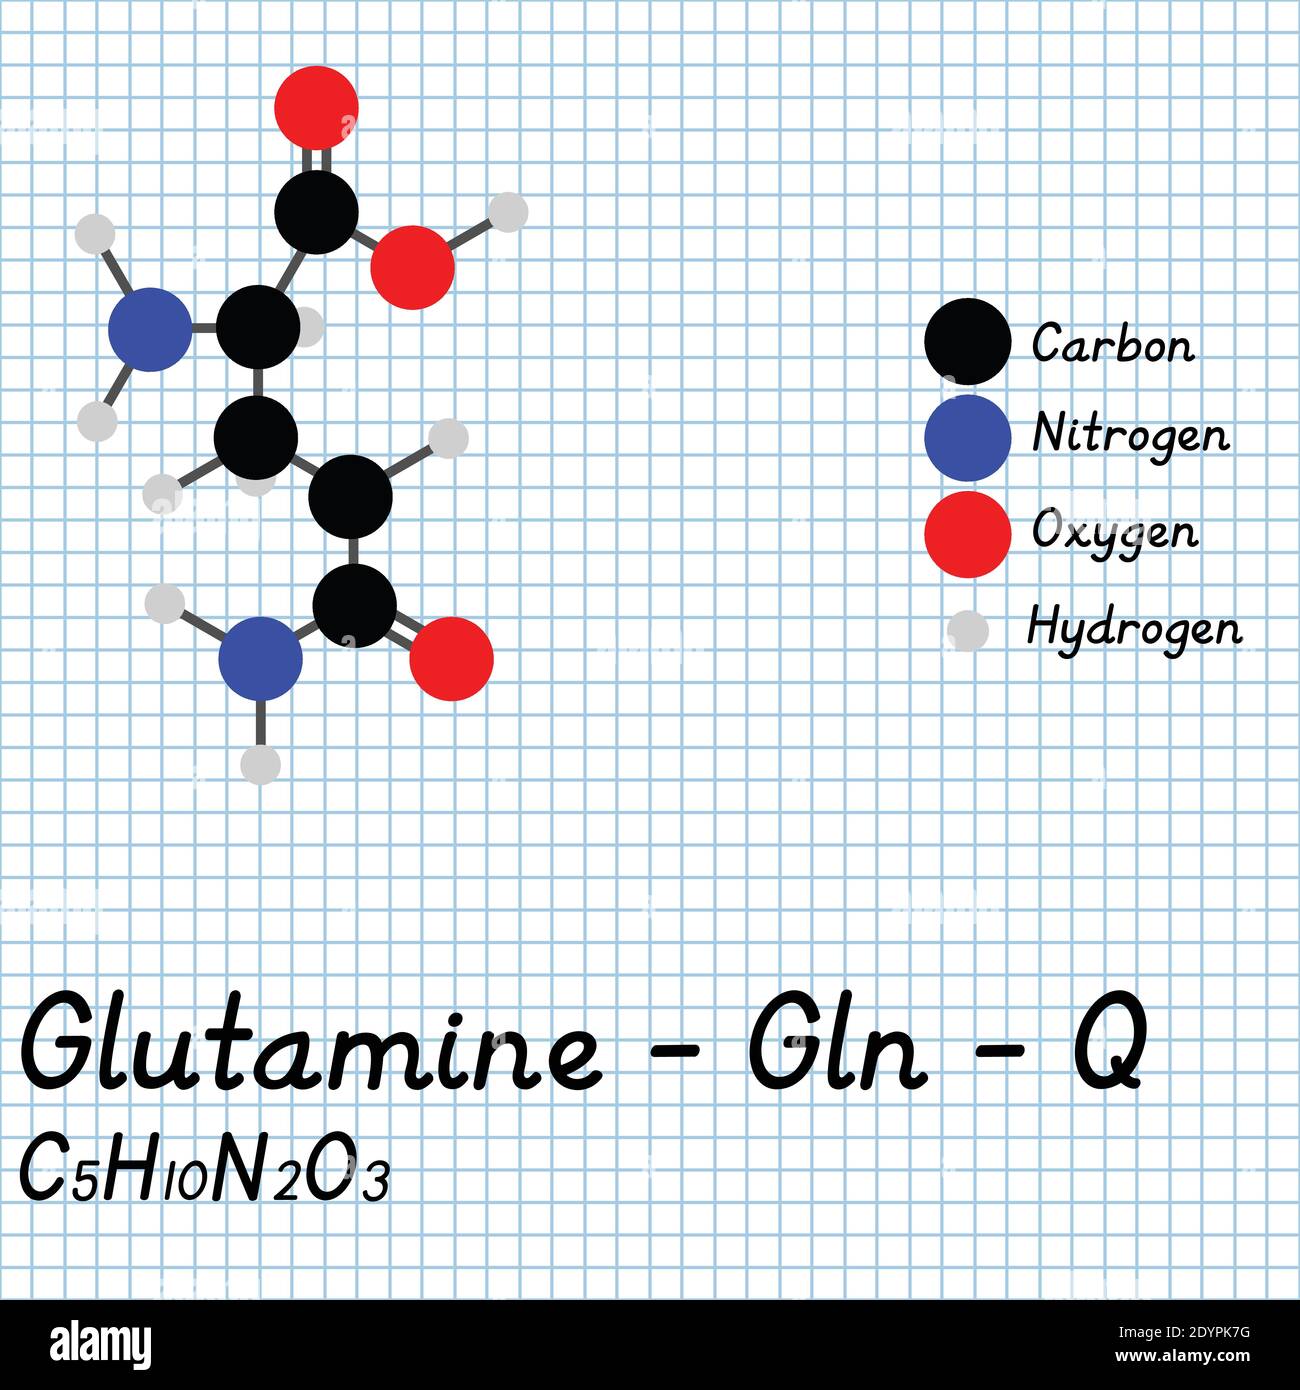 Glutamin - Gln - Q Amino Säure molekulare Formel und chemische Struktur . 2D Ball und Stick Modell auf Schule Papier Blatt Hintergrund. EPS10 Stock Vektor